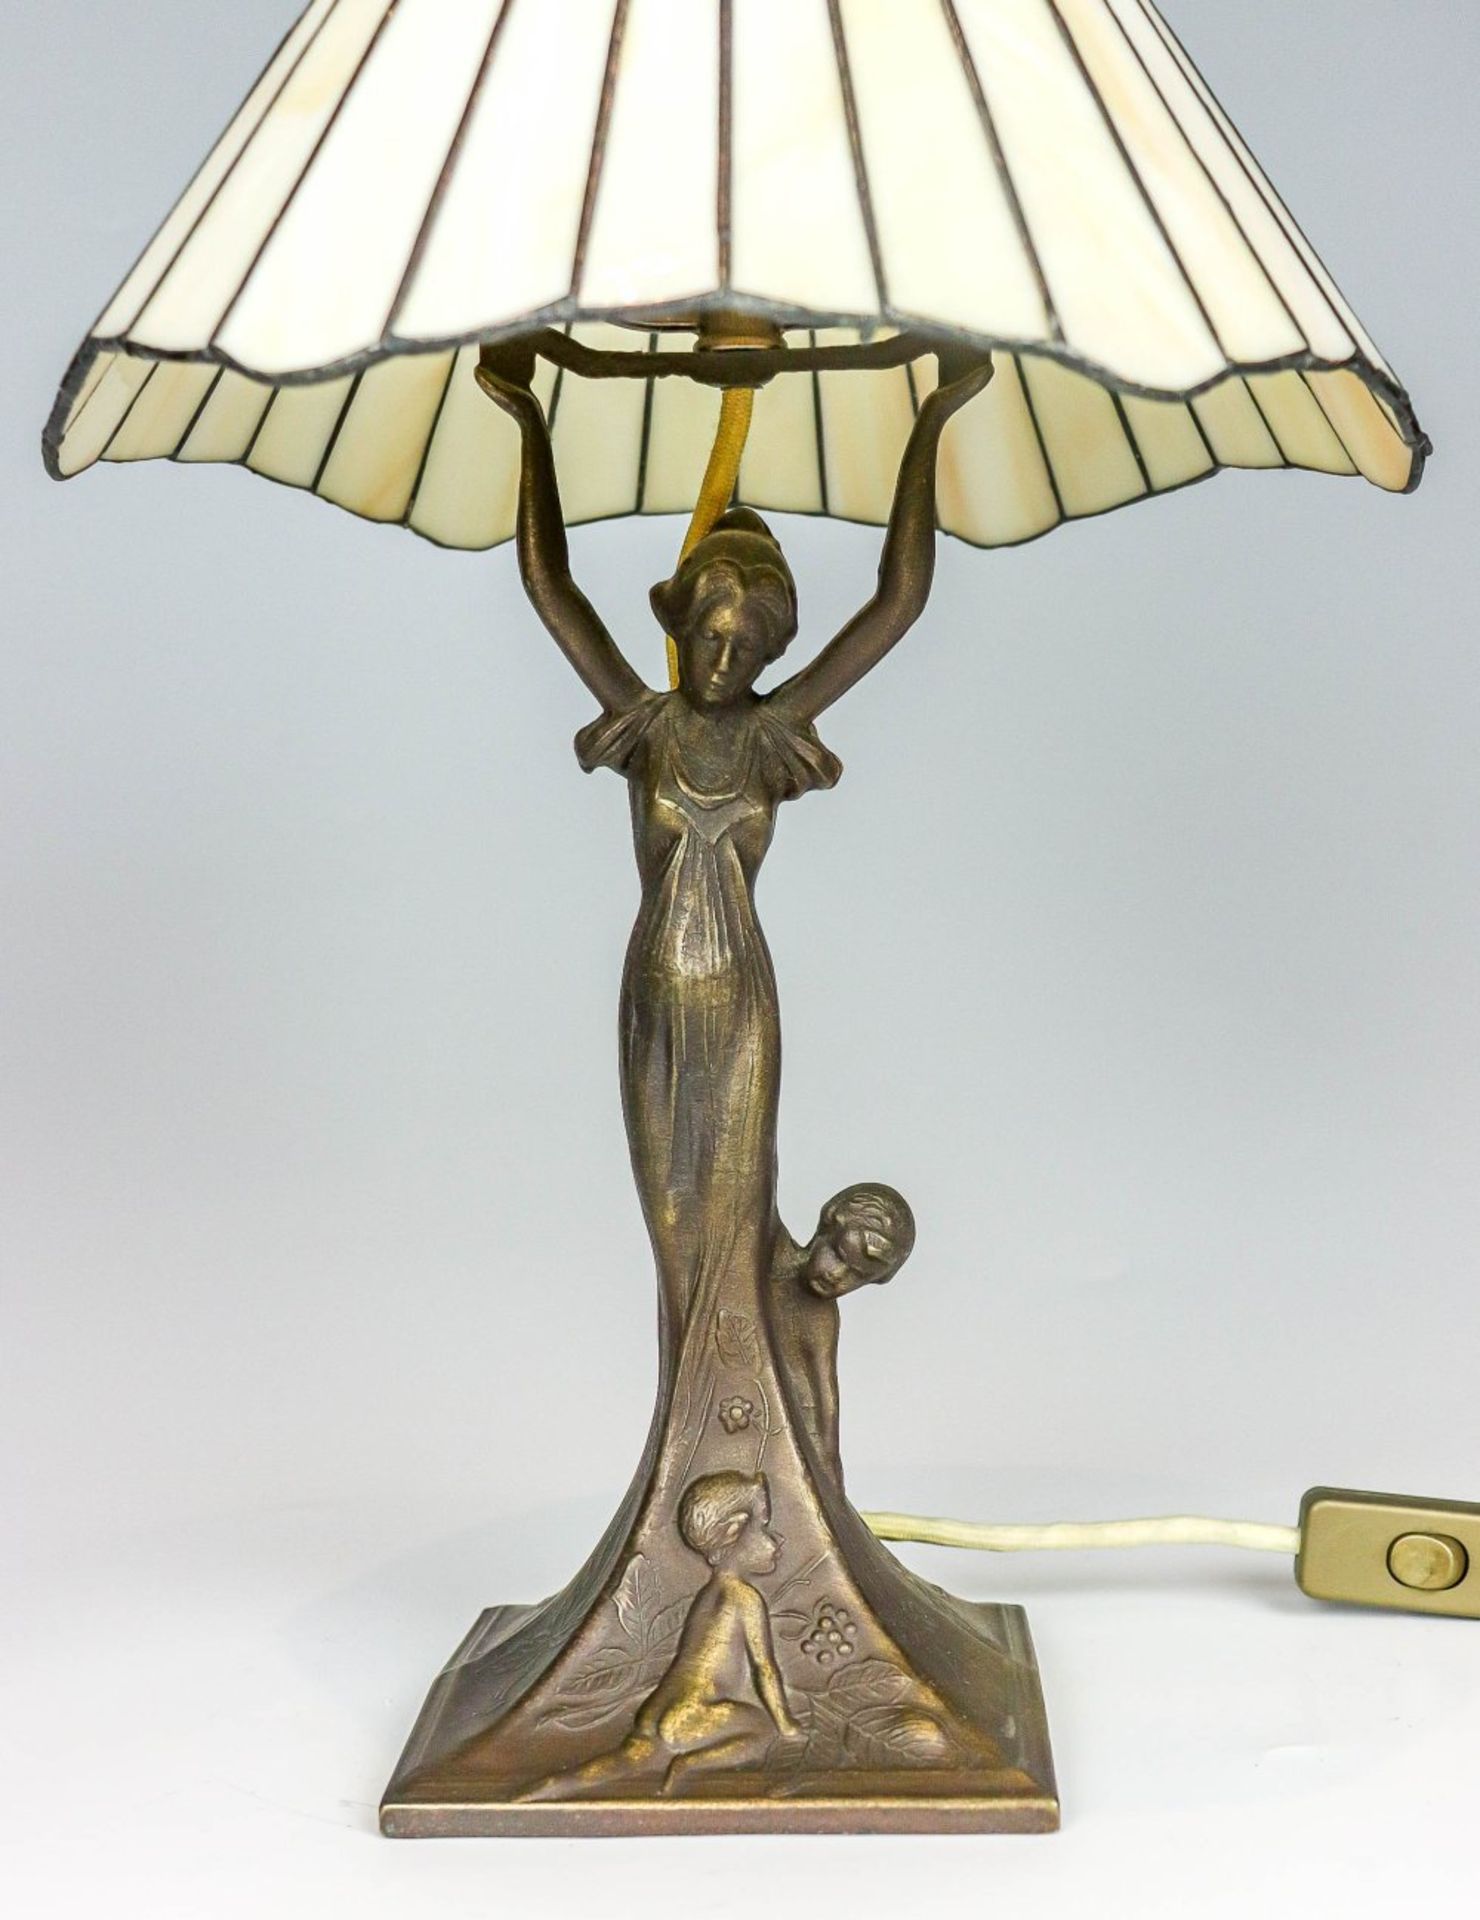 Kleine Tischlampe mit bleiverglastem Schirm im Jugendstil - Image 2 of 2